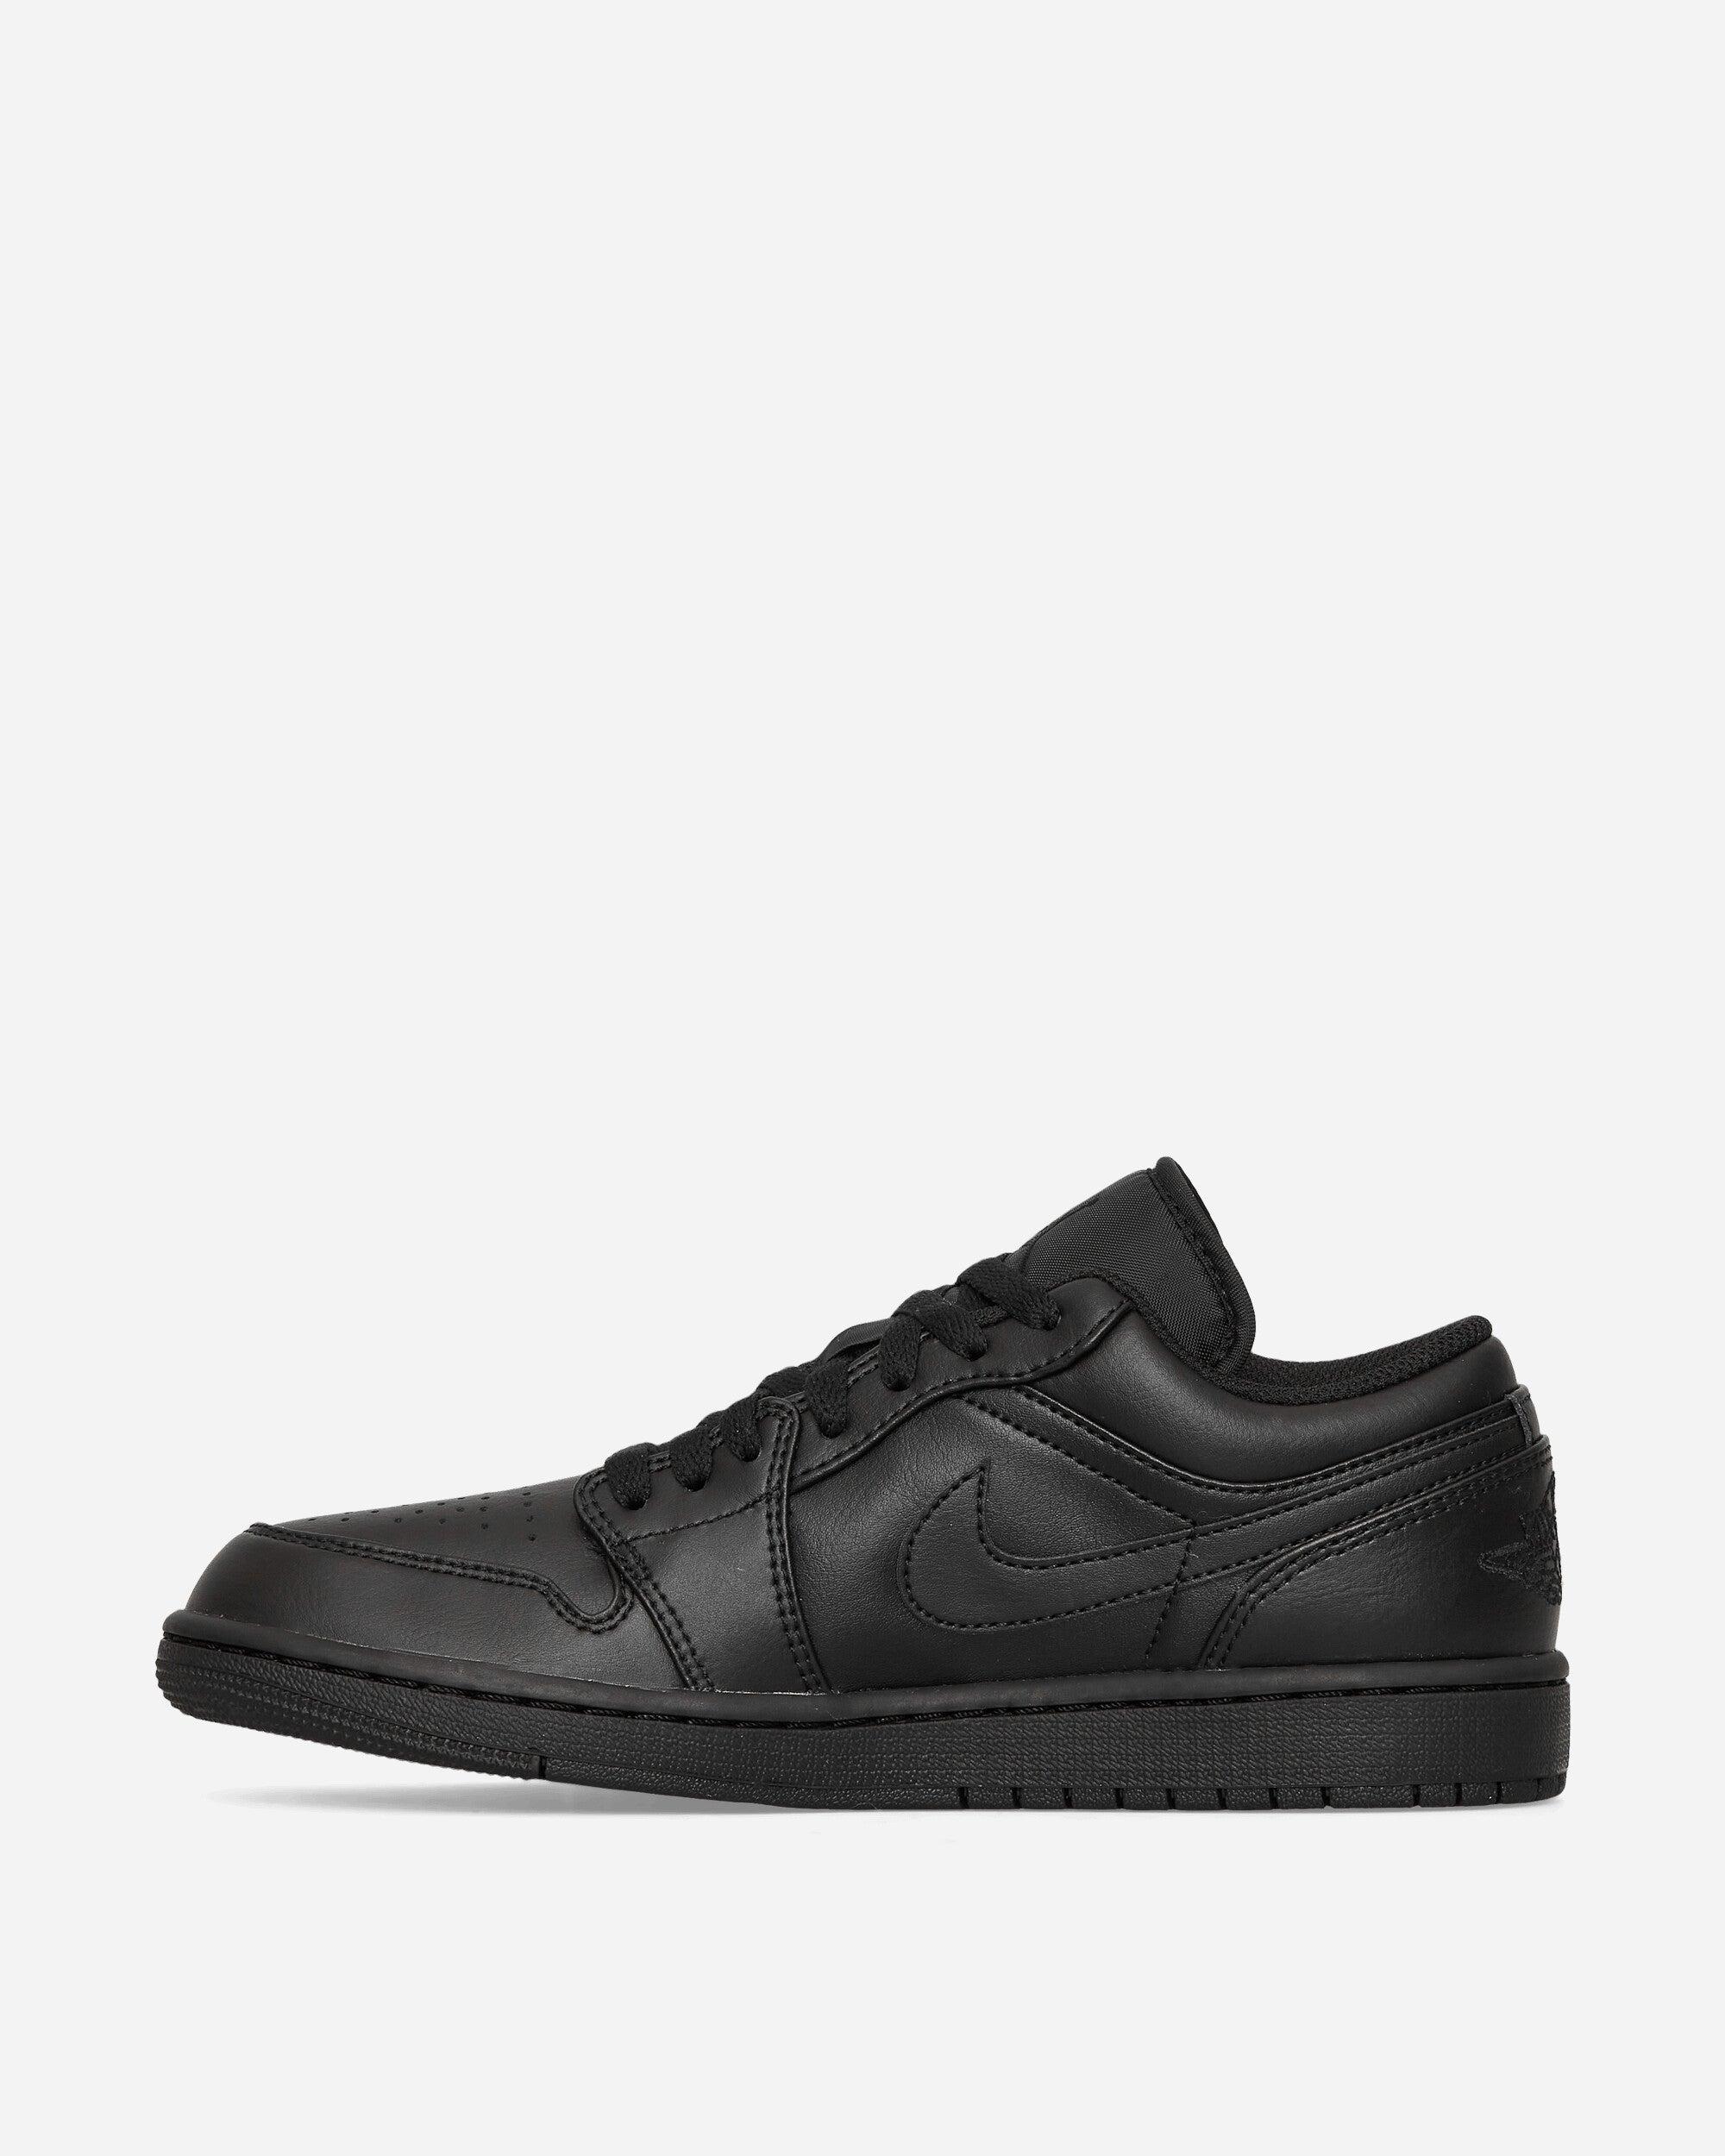 Nike Air Jordan 1 Low Sneakers Triple Black for Men | Lyst